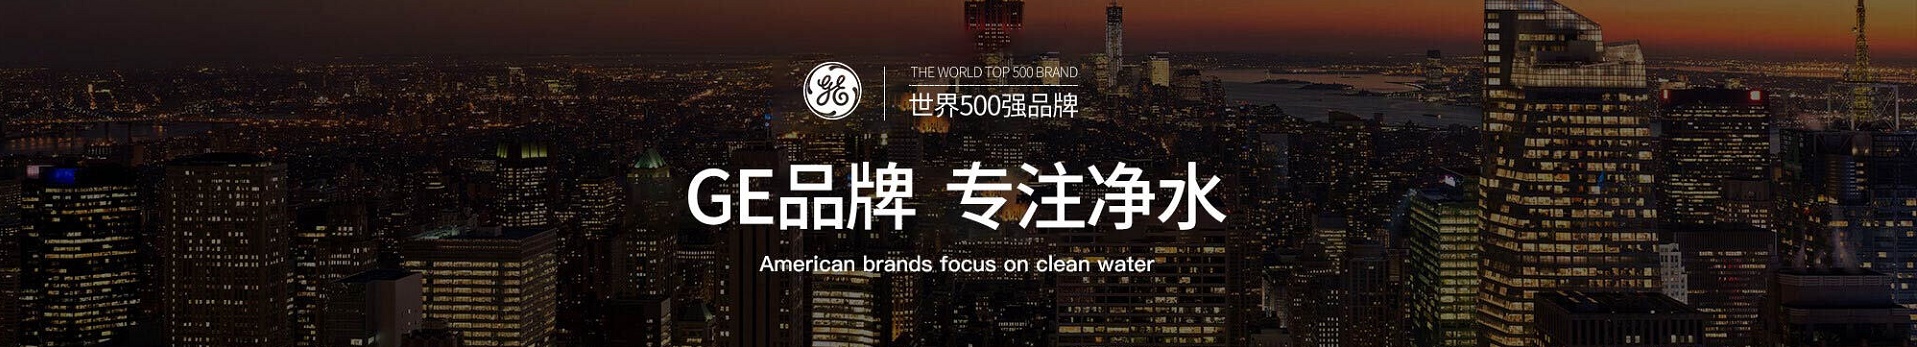 英尼克净水器获“十大最具竞争力知名品牌”